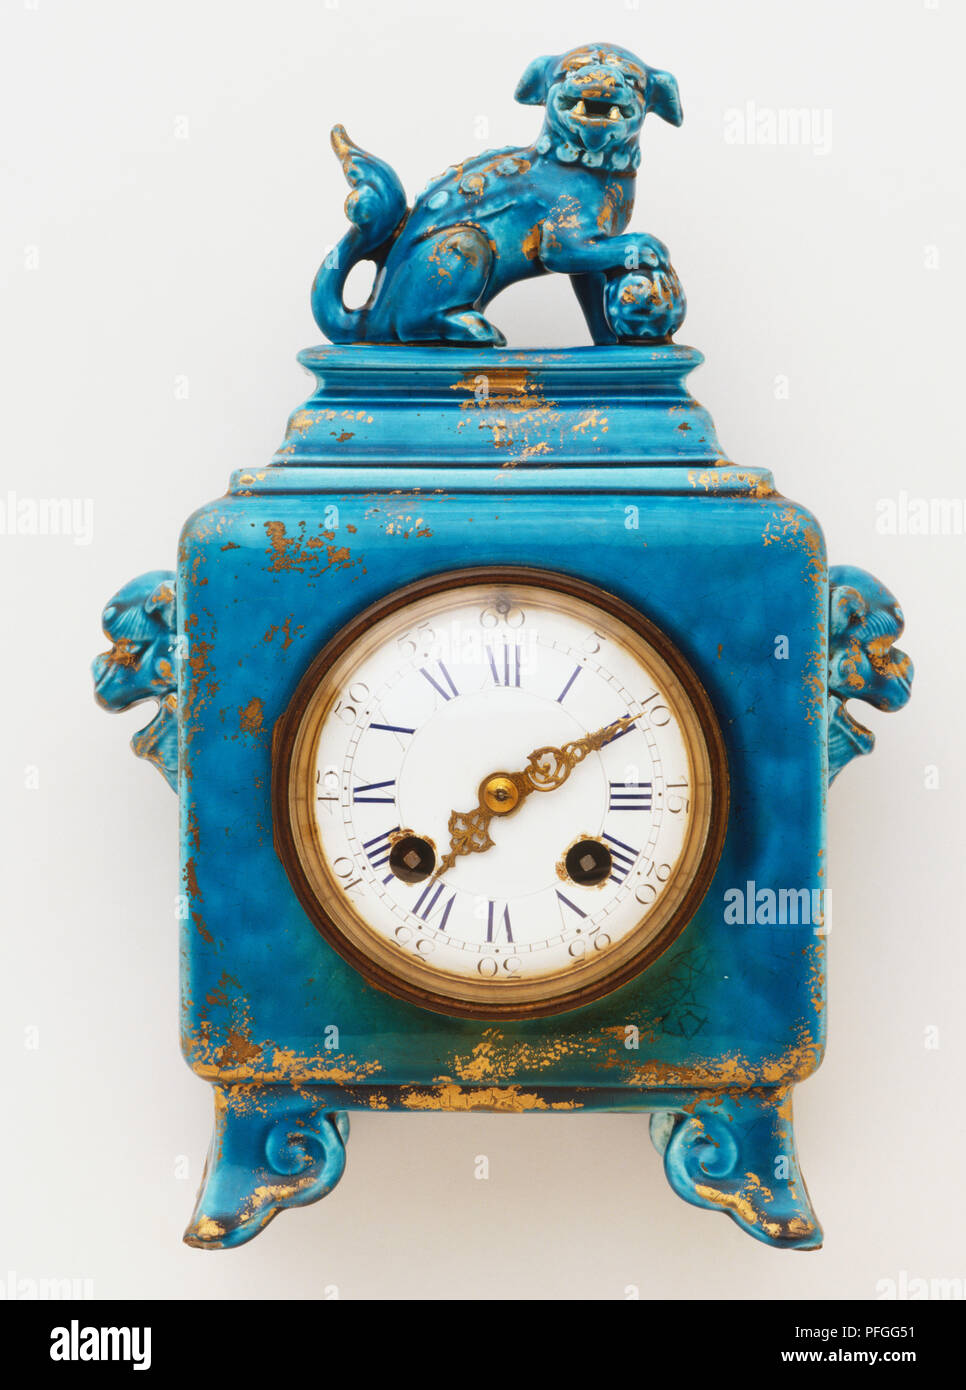 Blue antico orologio con numeri romani e cane scolpito statuetta, vista frontale Foto Stock